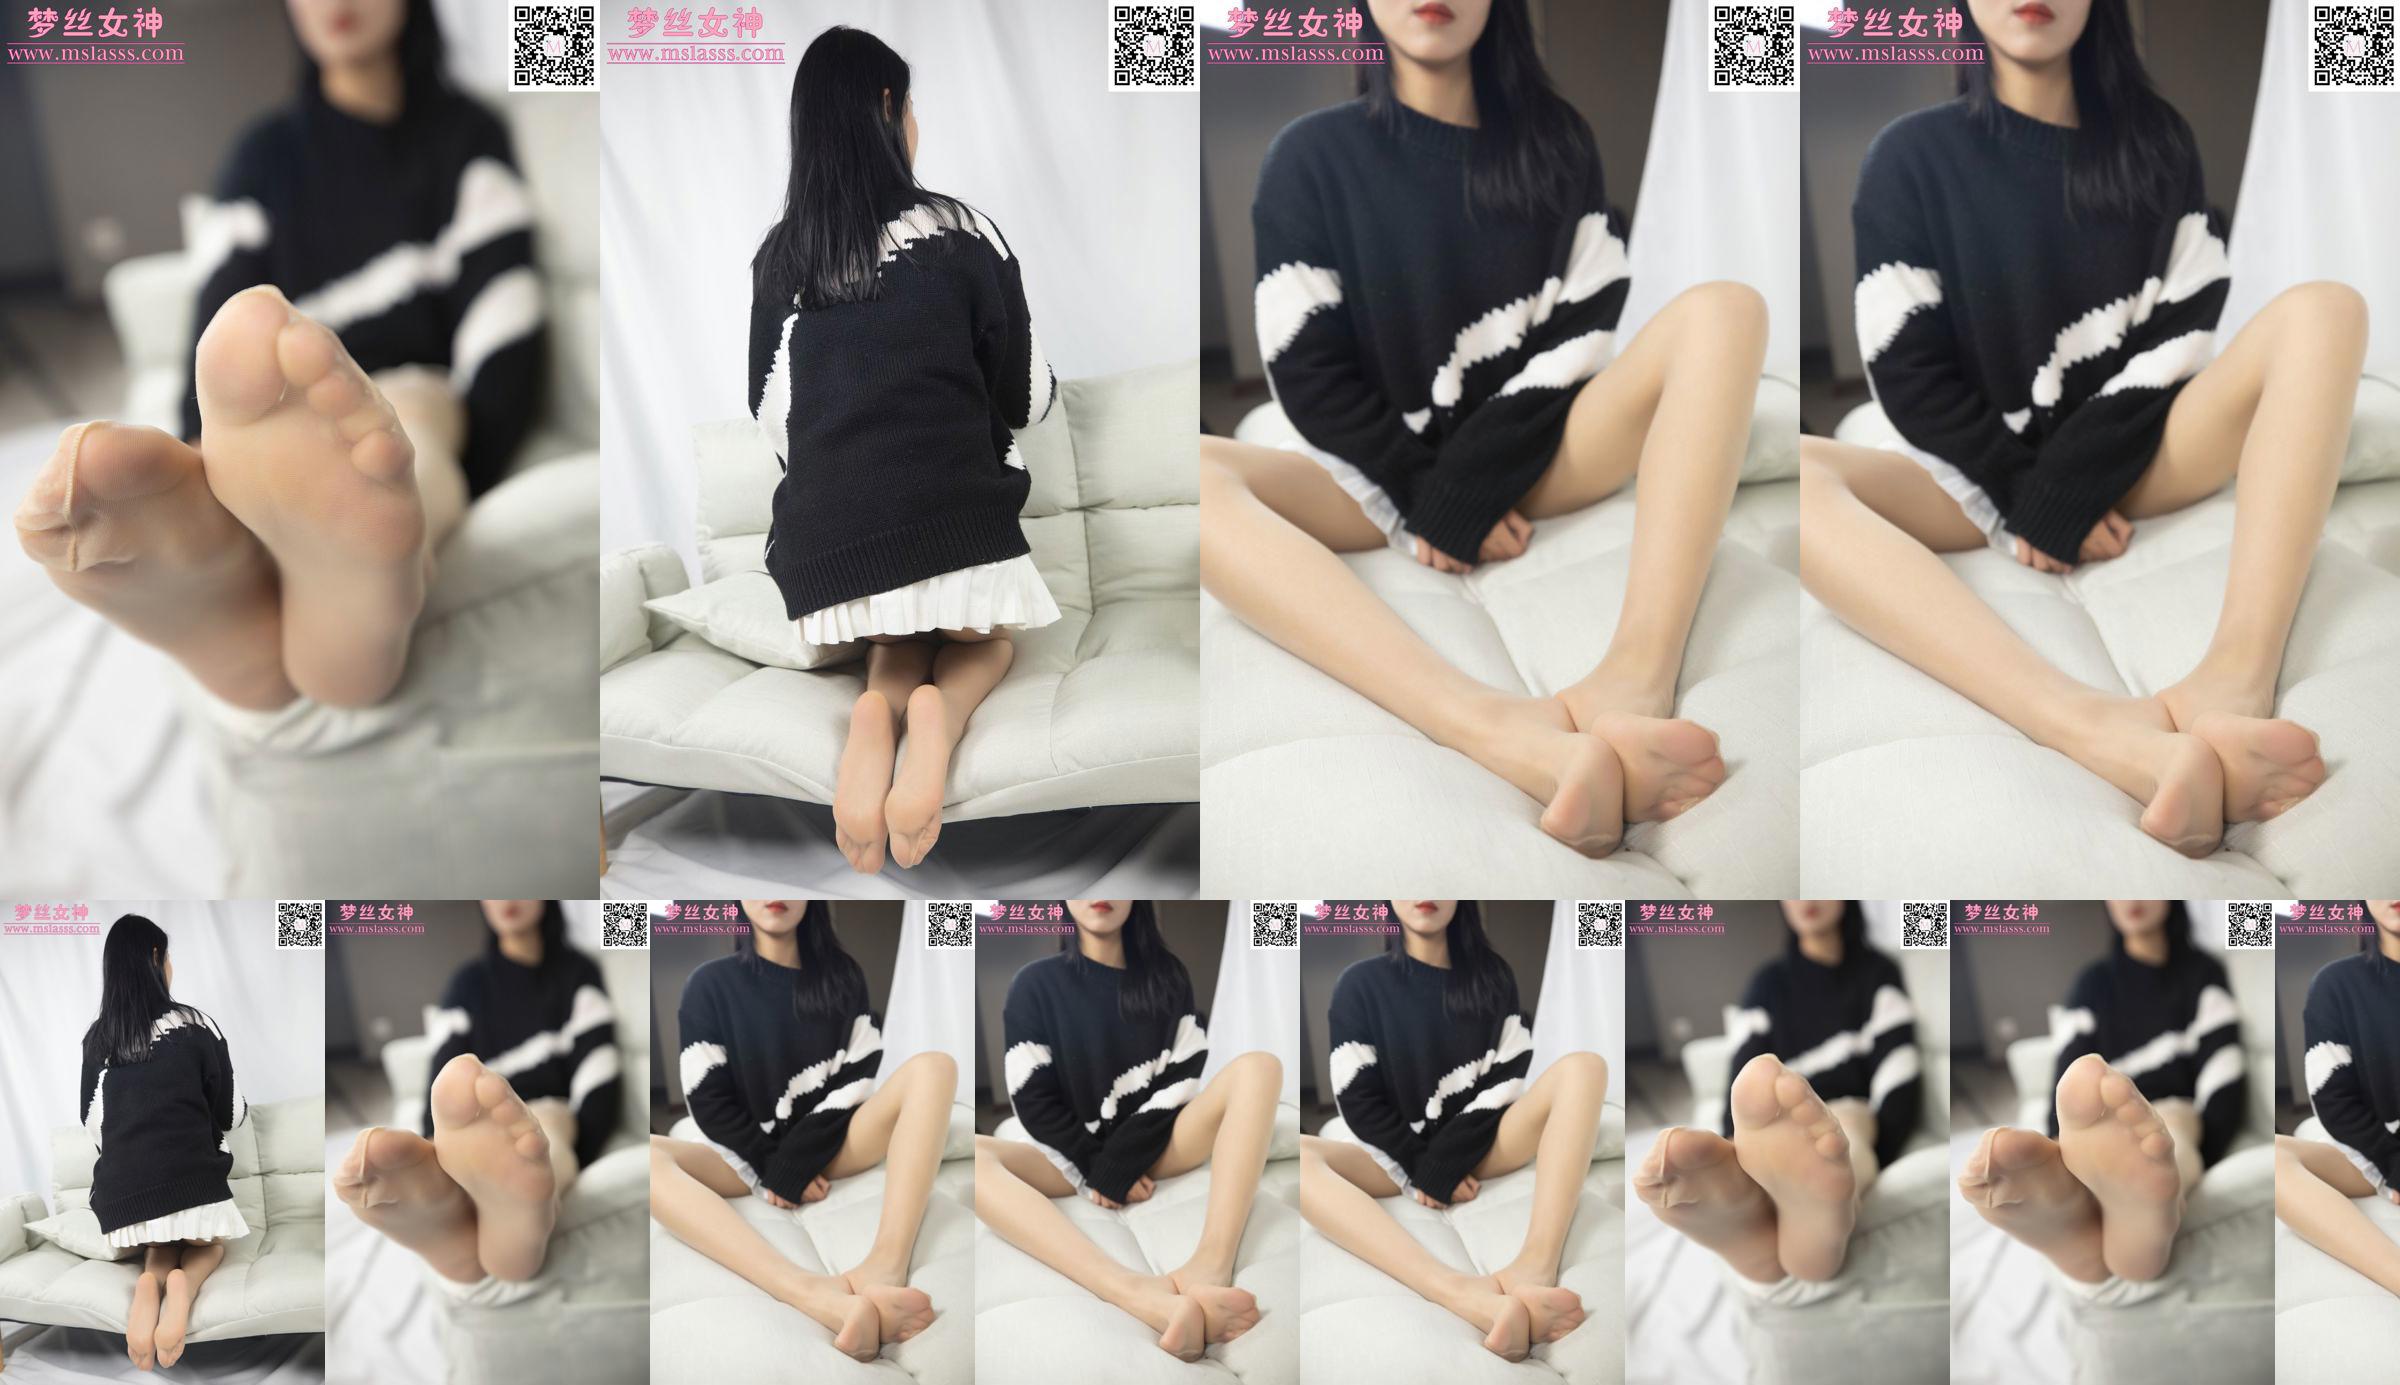 [Goddess of Dreams MSLASS] Sweter Xiaomu nie może powstrzymać jej długich nóg No.2faf2c Strona 2